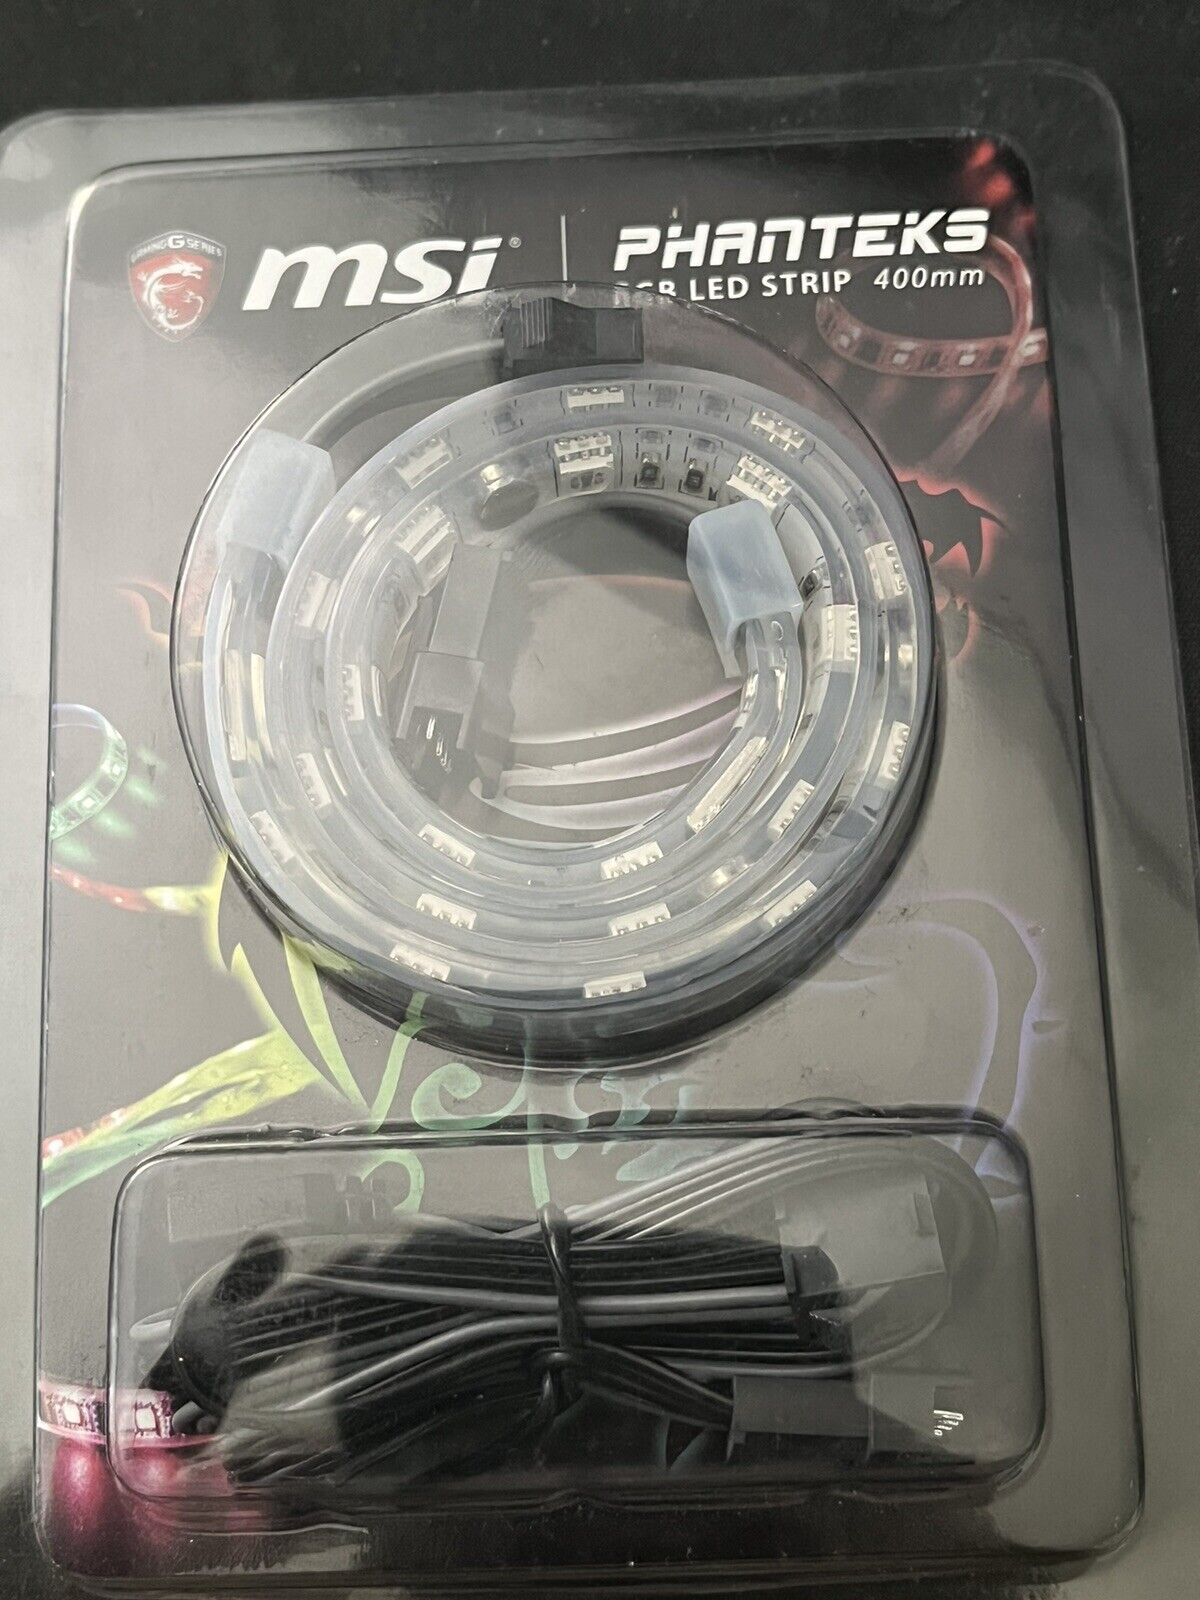 MSI Phanteks RGB LED STRIP 400mm